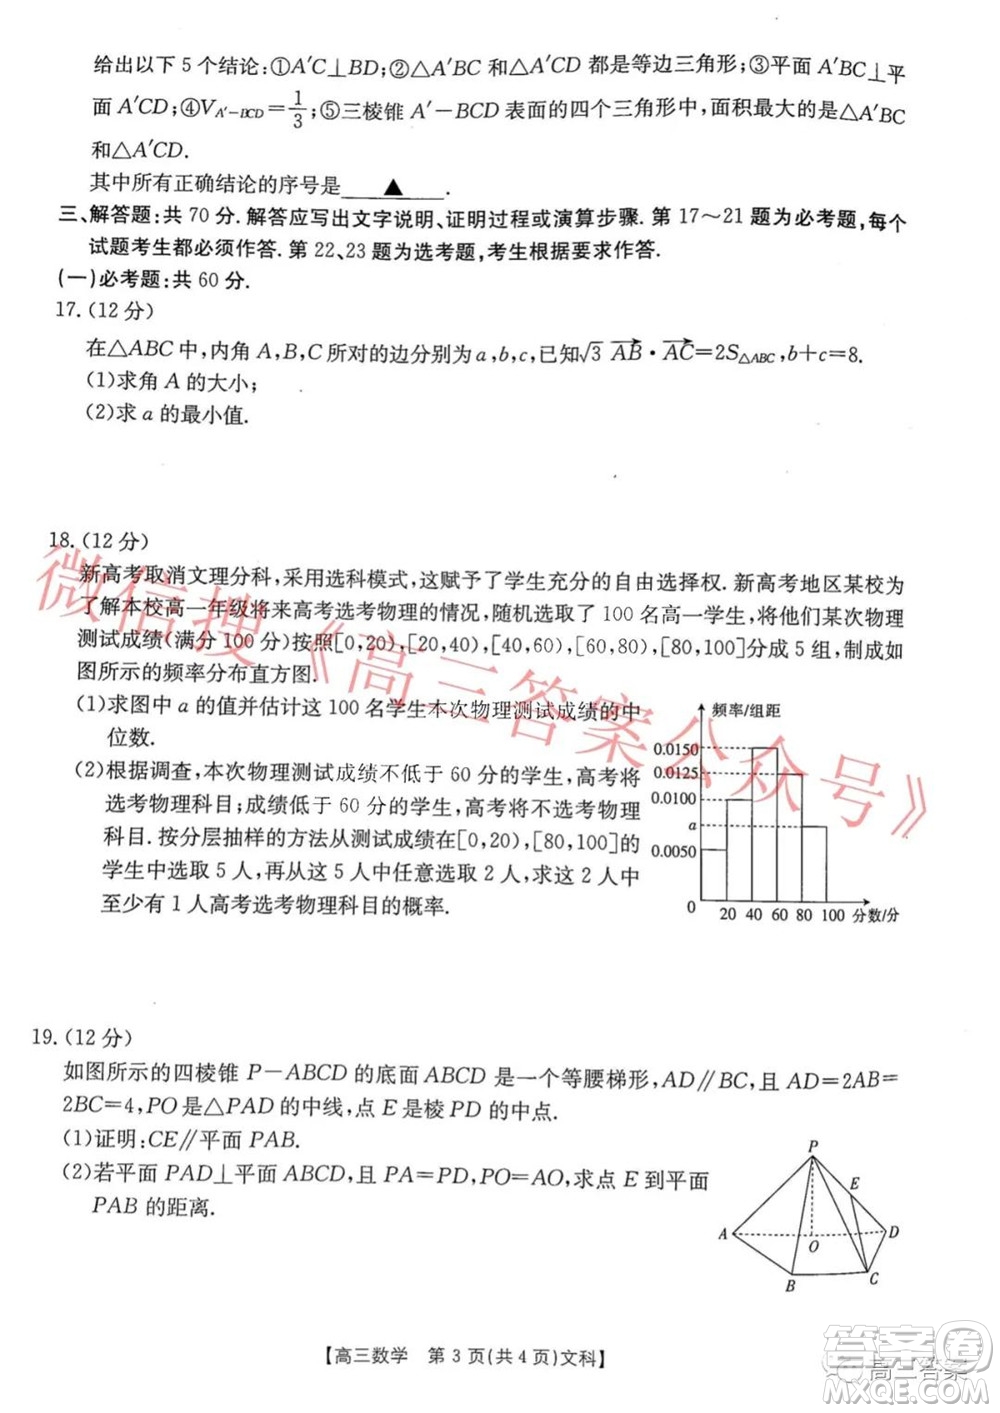 2021-2022年度河南省第五次高三联考文科数学试题及答案